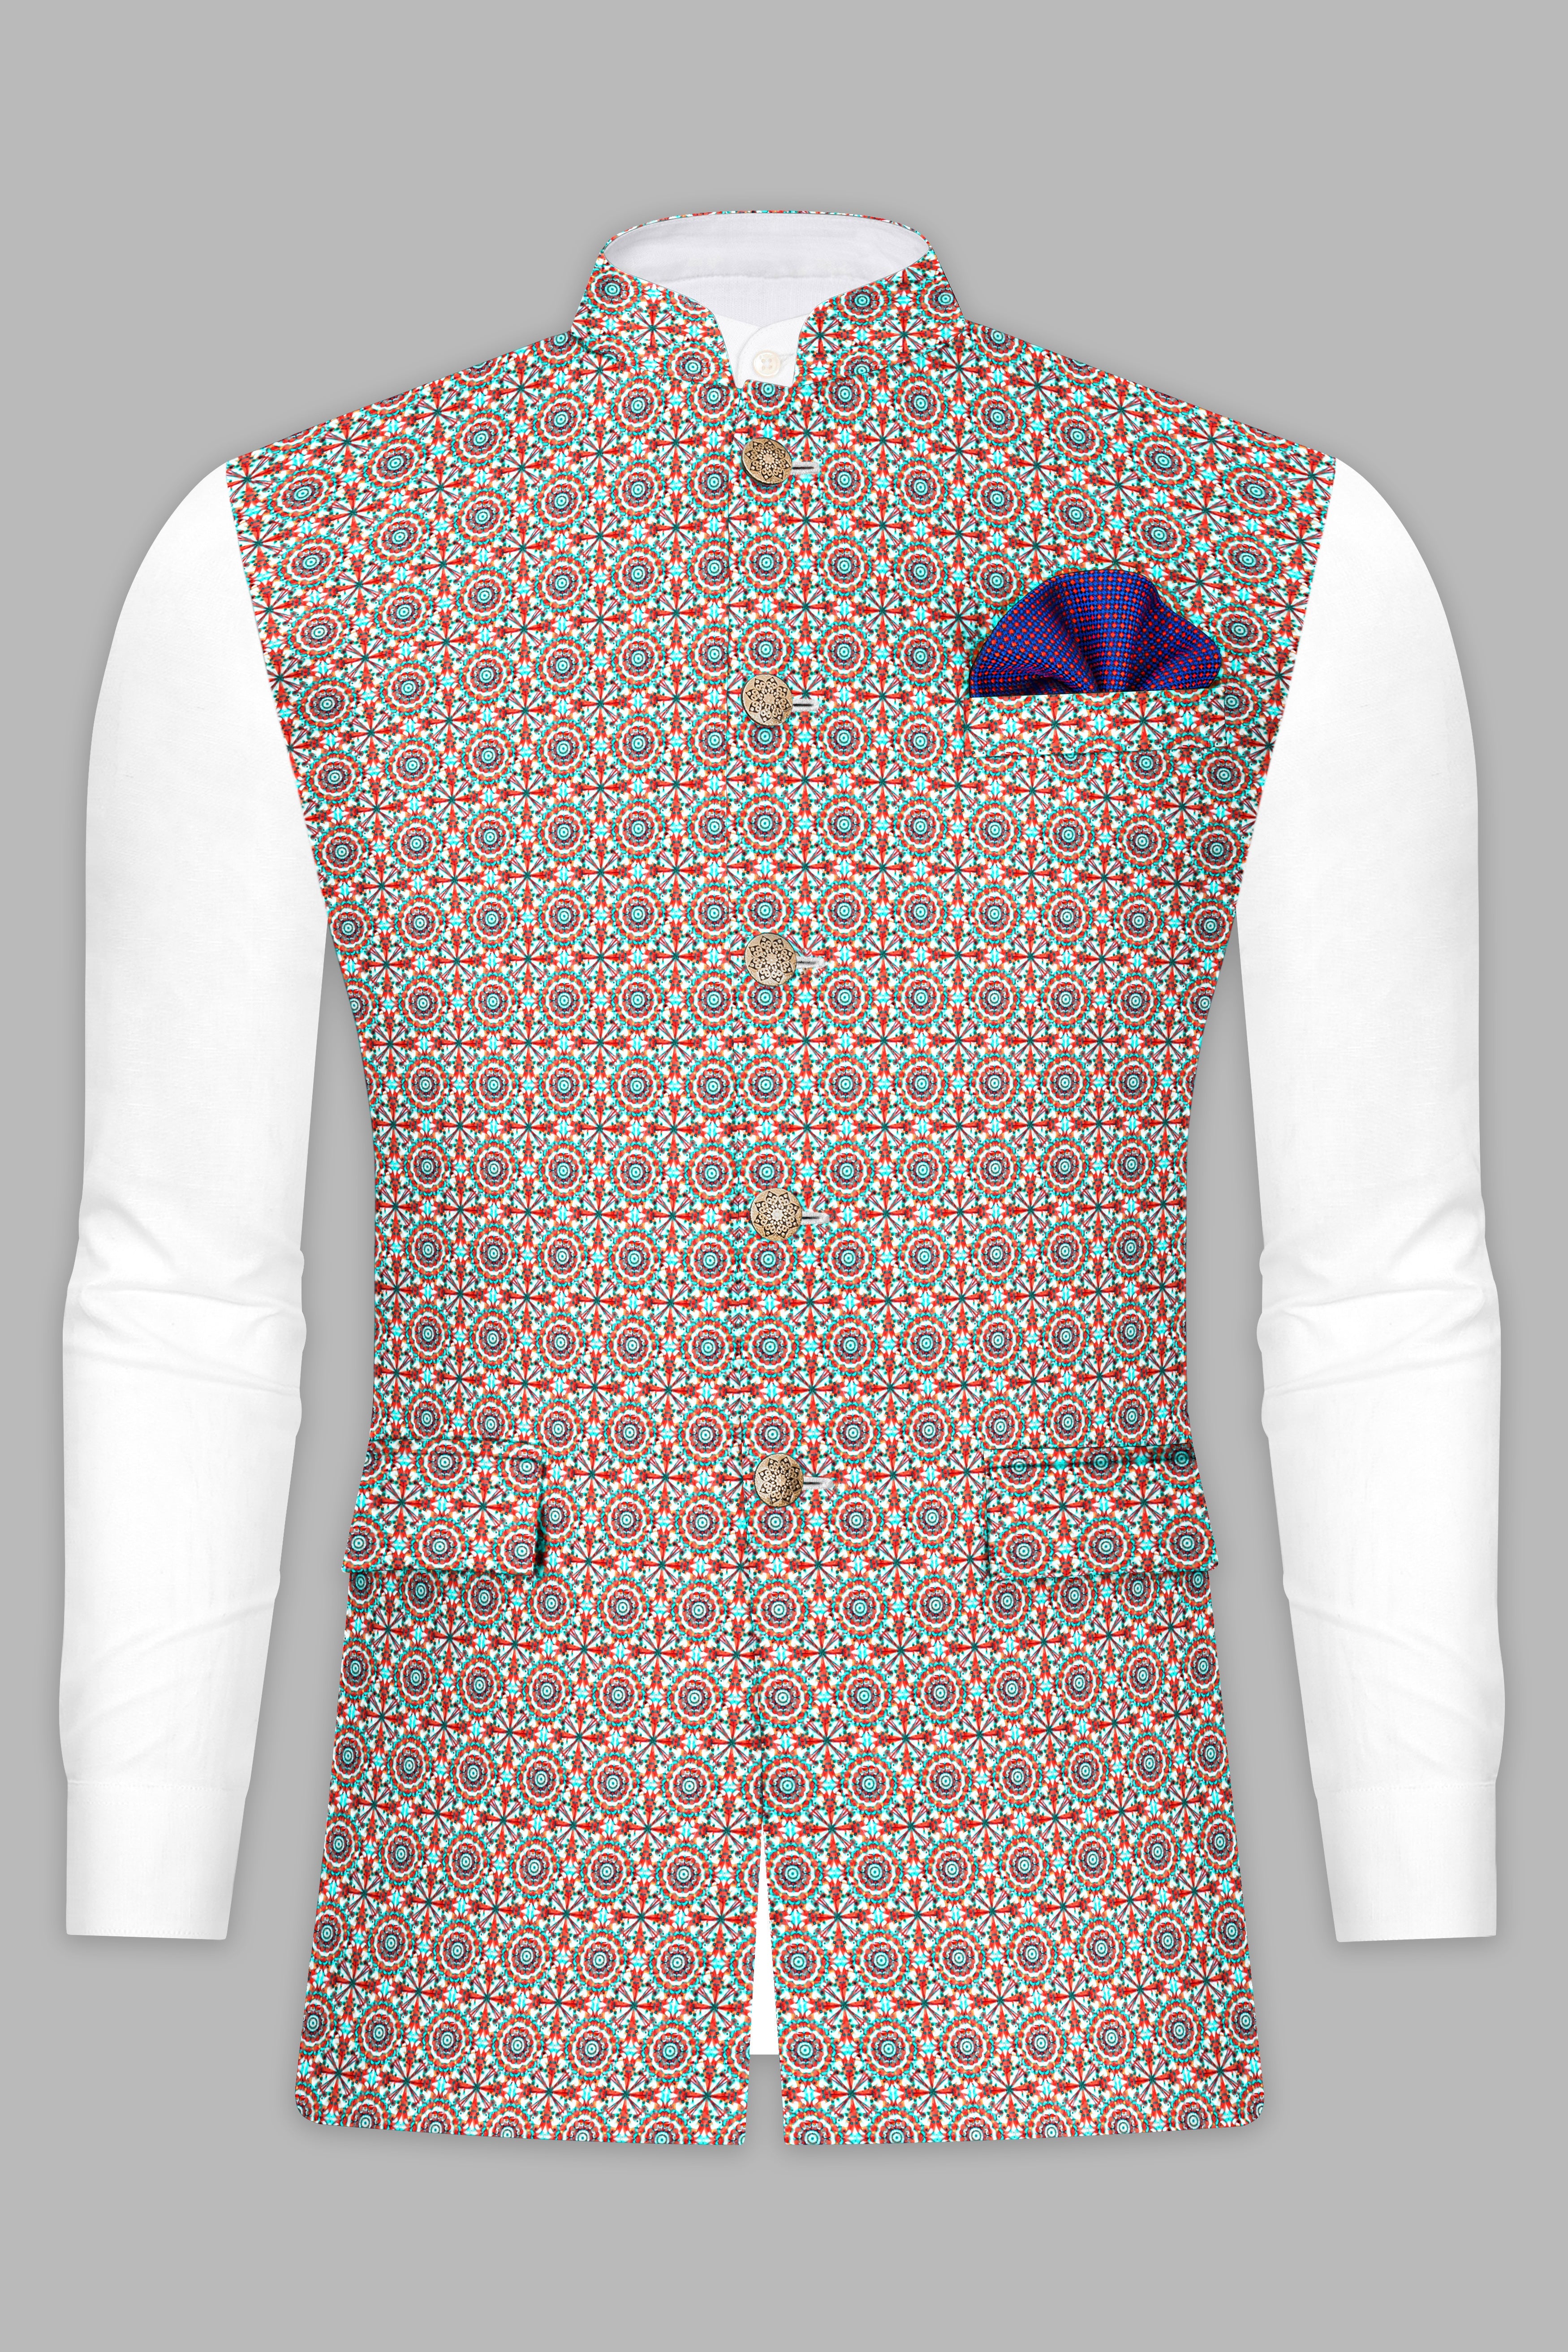 Sienna Red Tron Blue Designer Thread Embroidered Nehru Jacket